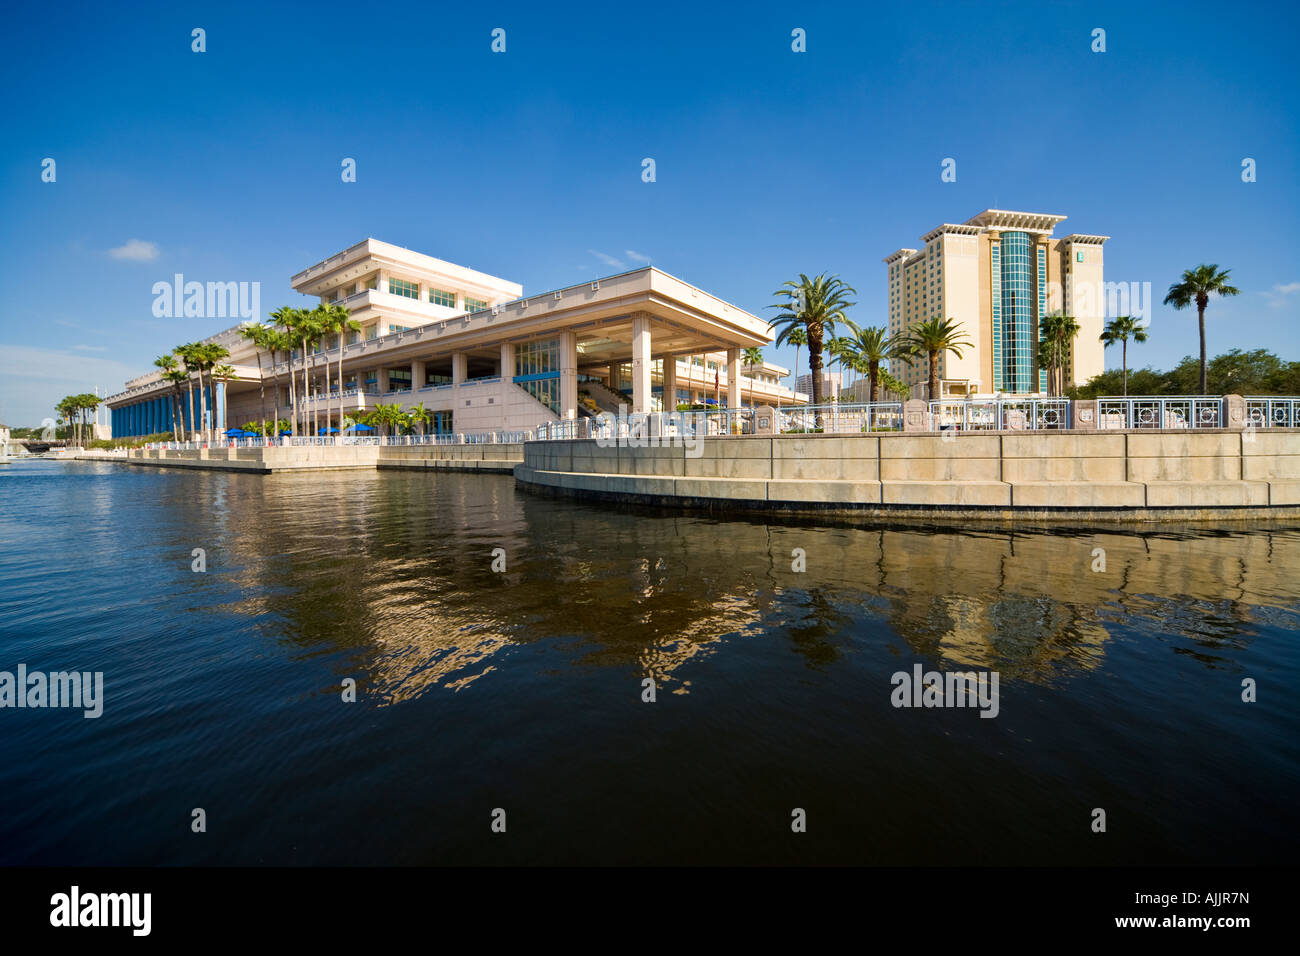 Ville de Tampa Convention Center waterfront Hillsborough River, région de Tampa Bay Floride US USA. Embassy Suites Hotel sur la droite. Banque D'Images